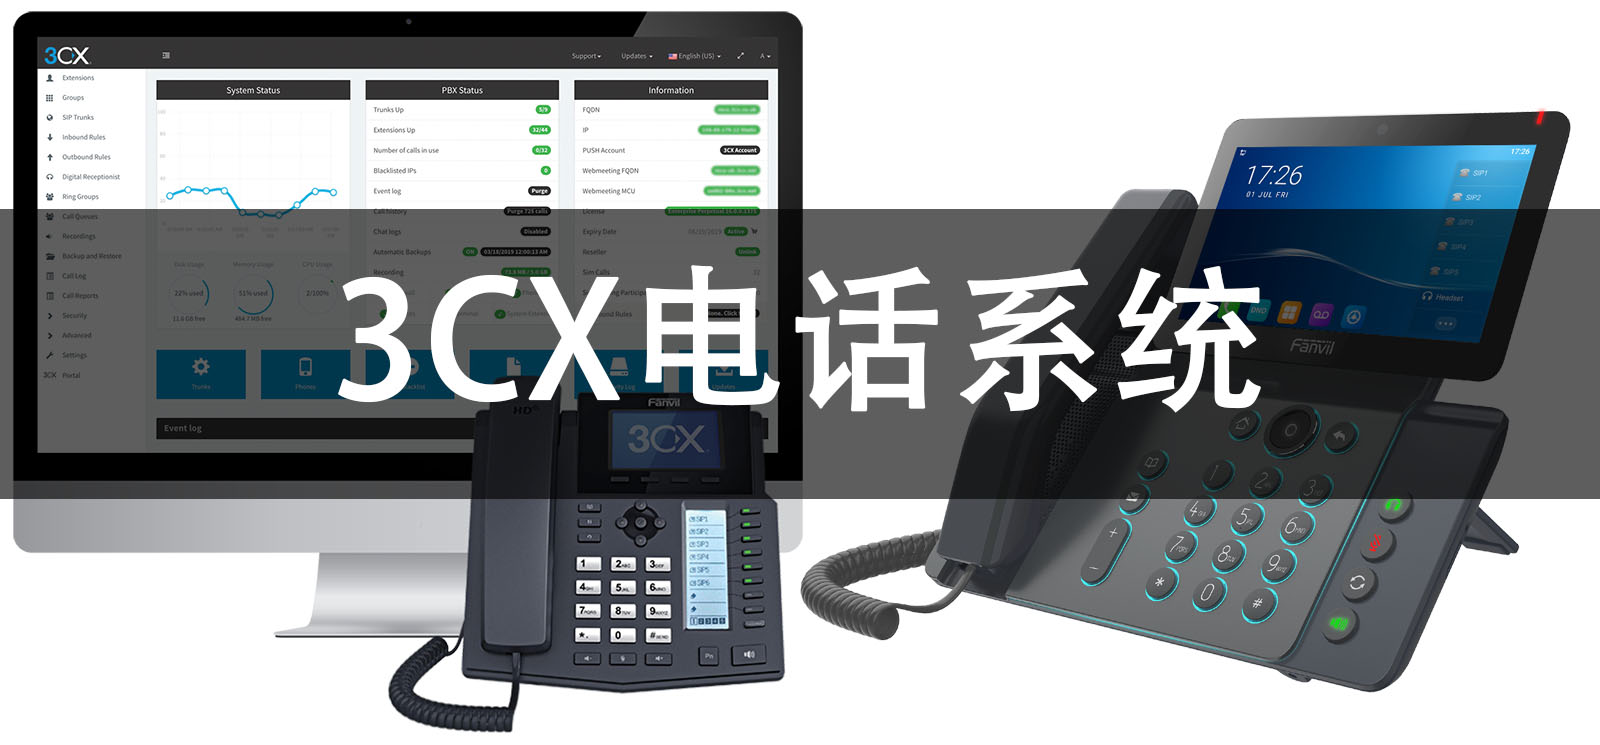 3CX电话系统